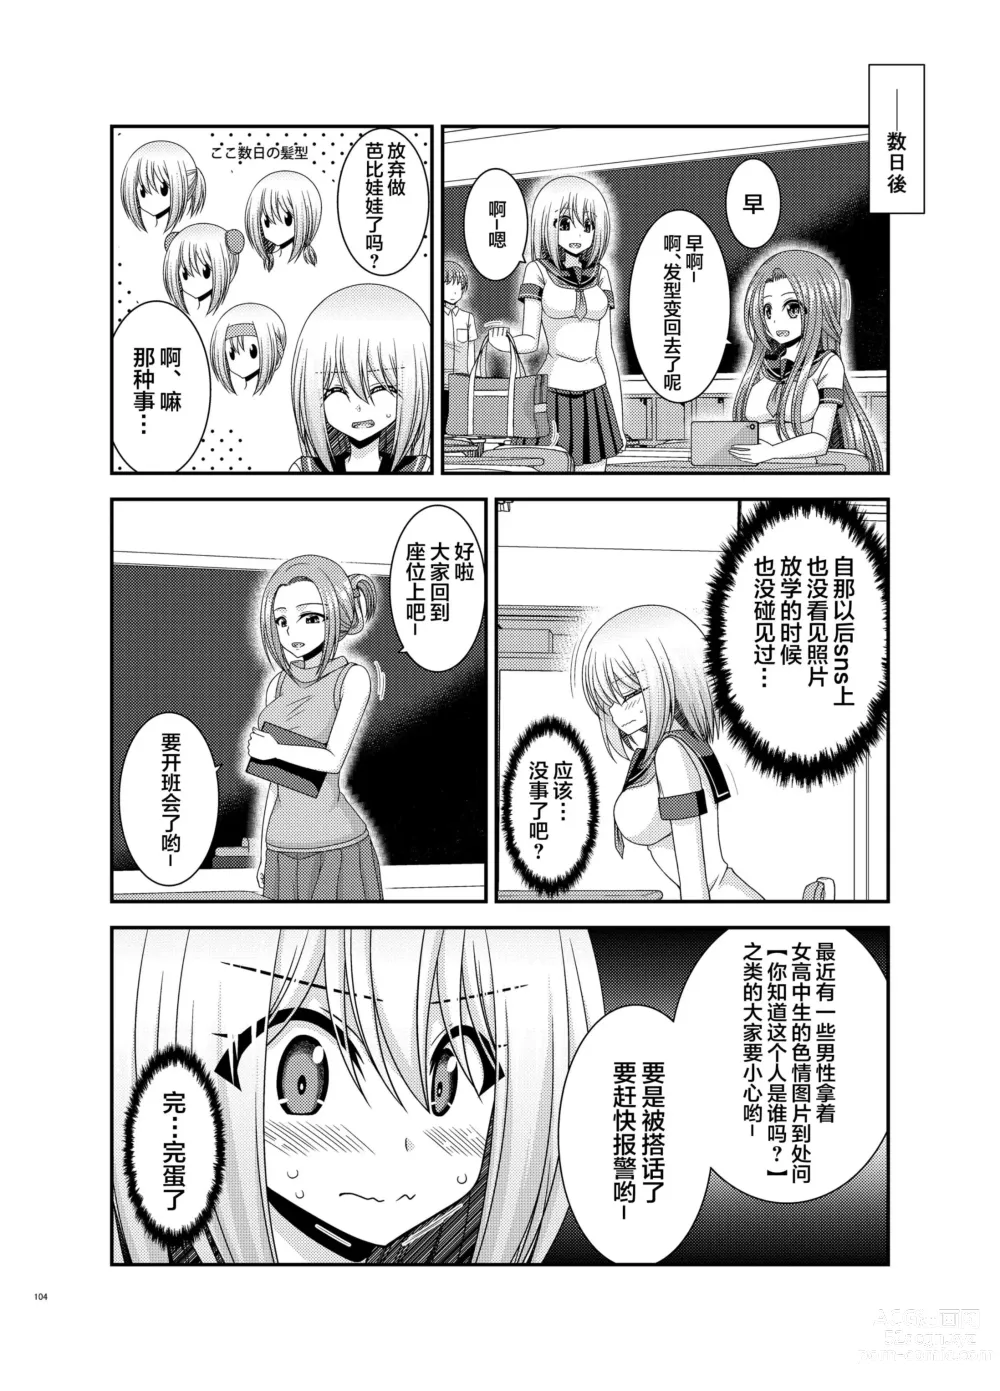 Page 101 of manga Nozokare Roshutsu Shoujo